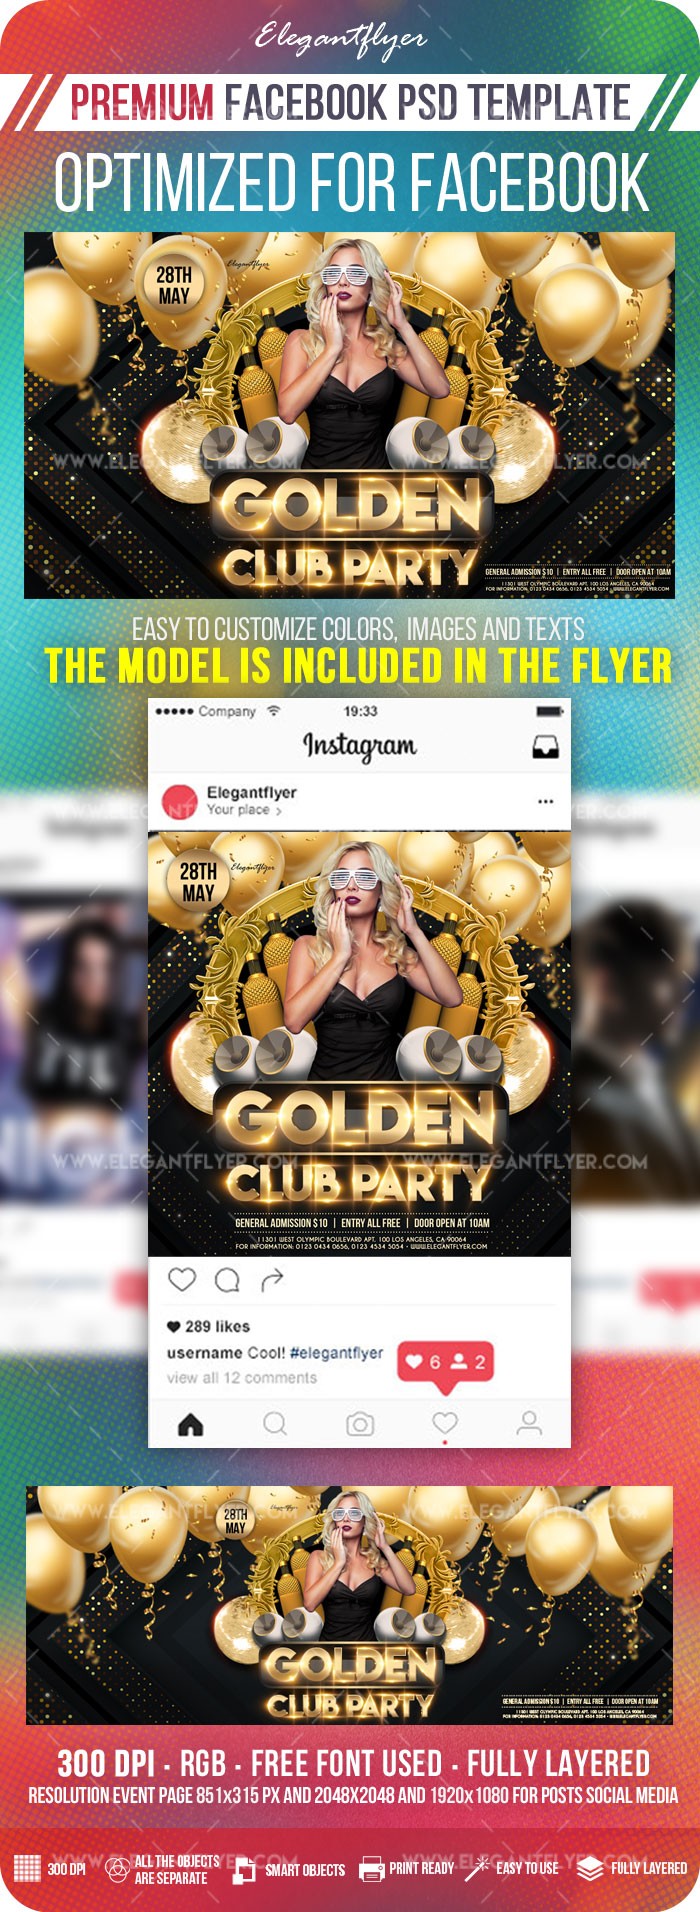 Złota Klubowa Impreza na Facebooku by ElegantFlyer